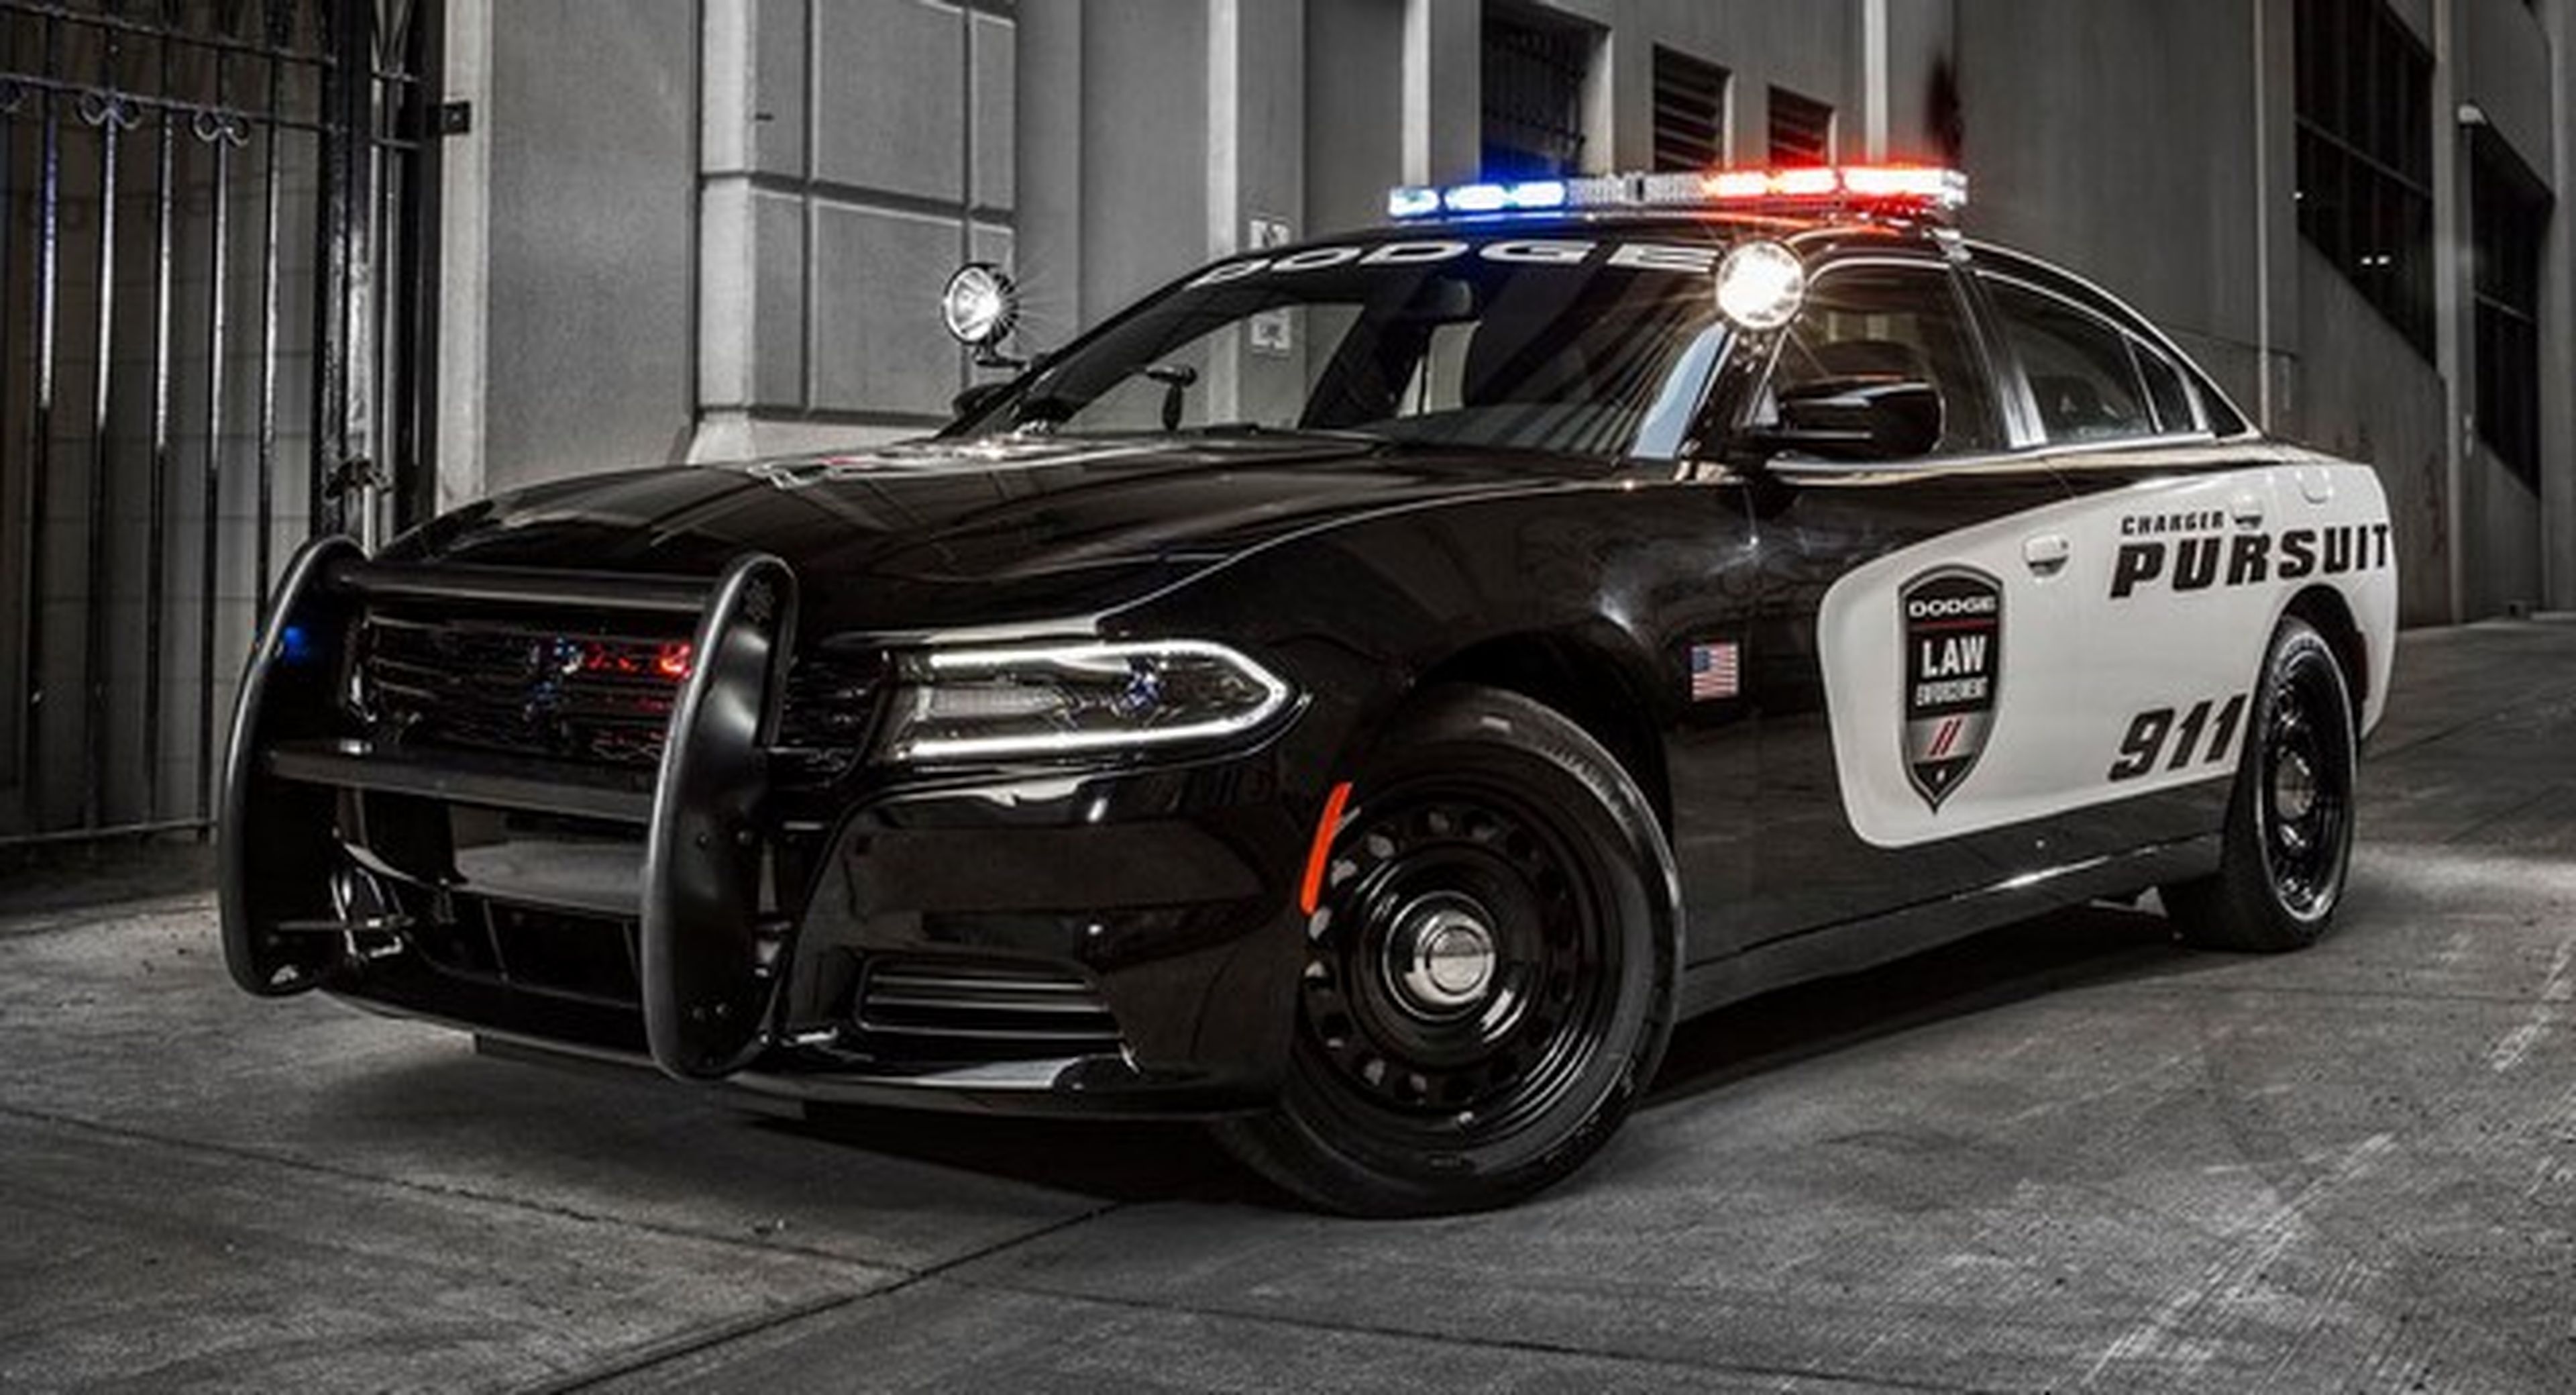 El Dodge Charger Pursuit de la policía todavía más seguro